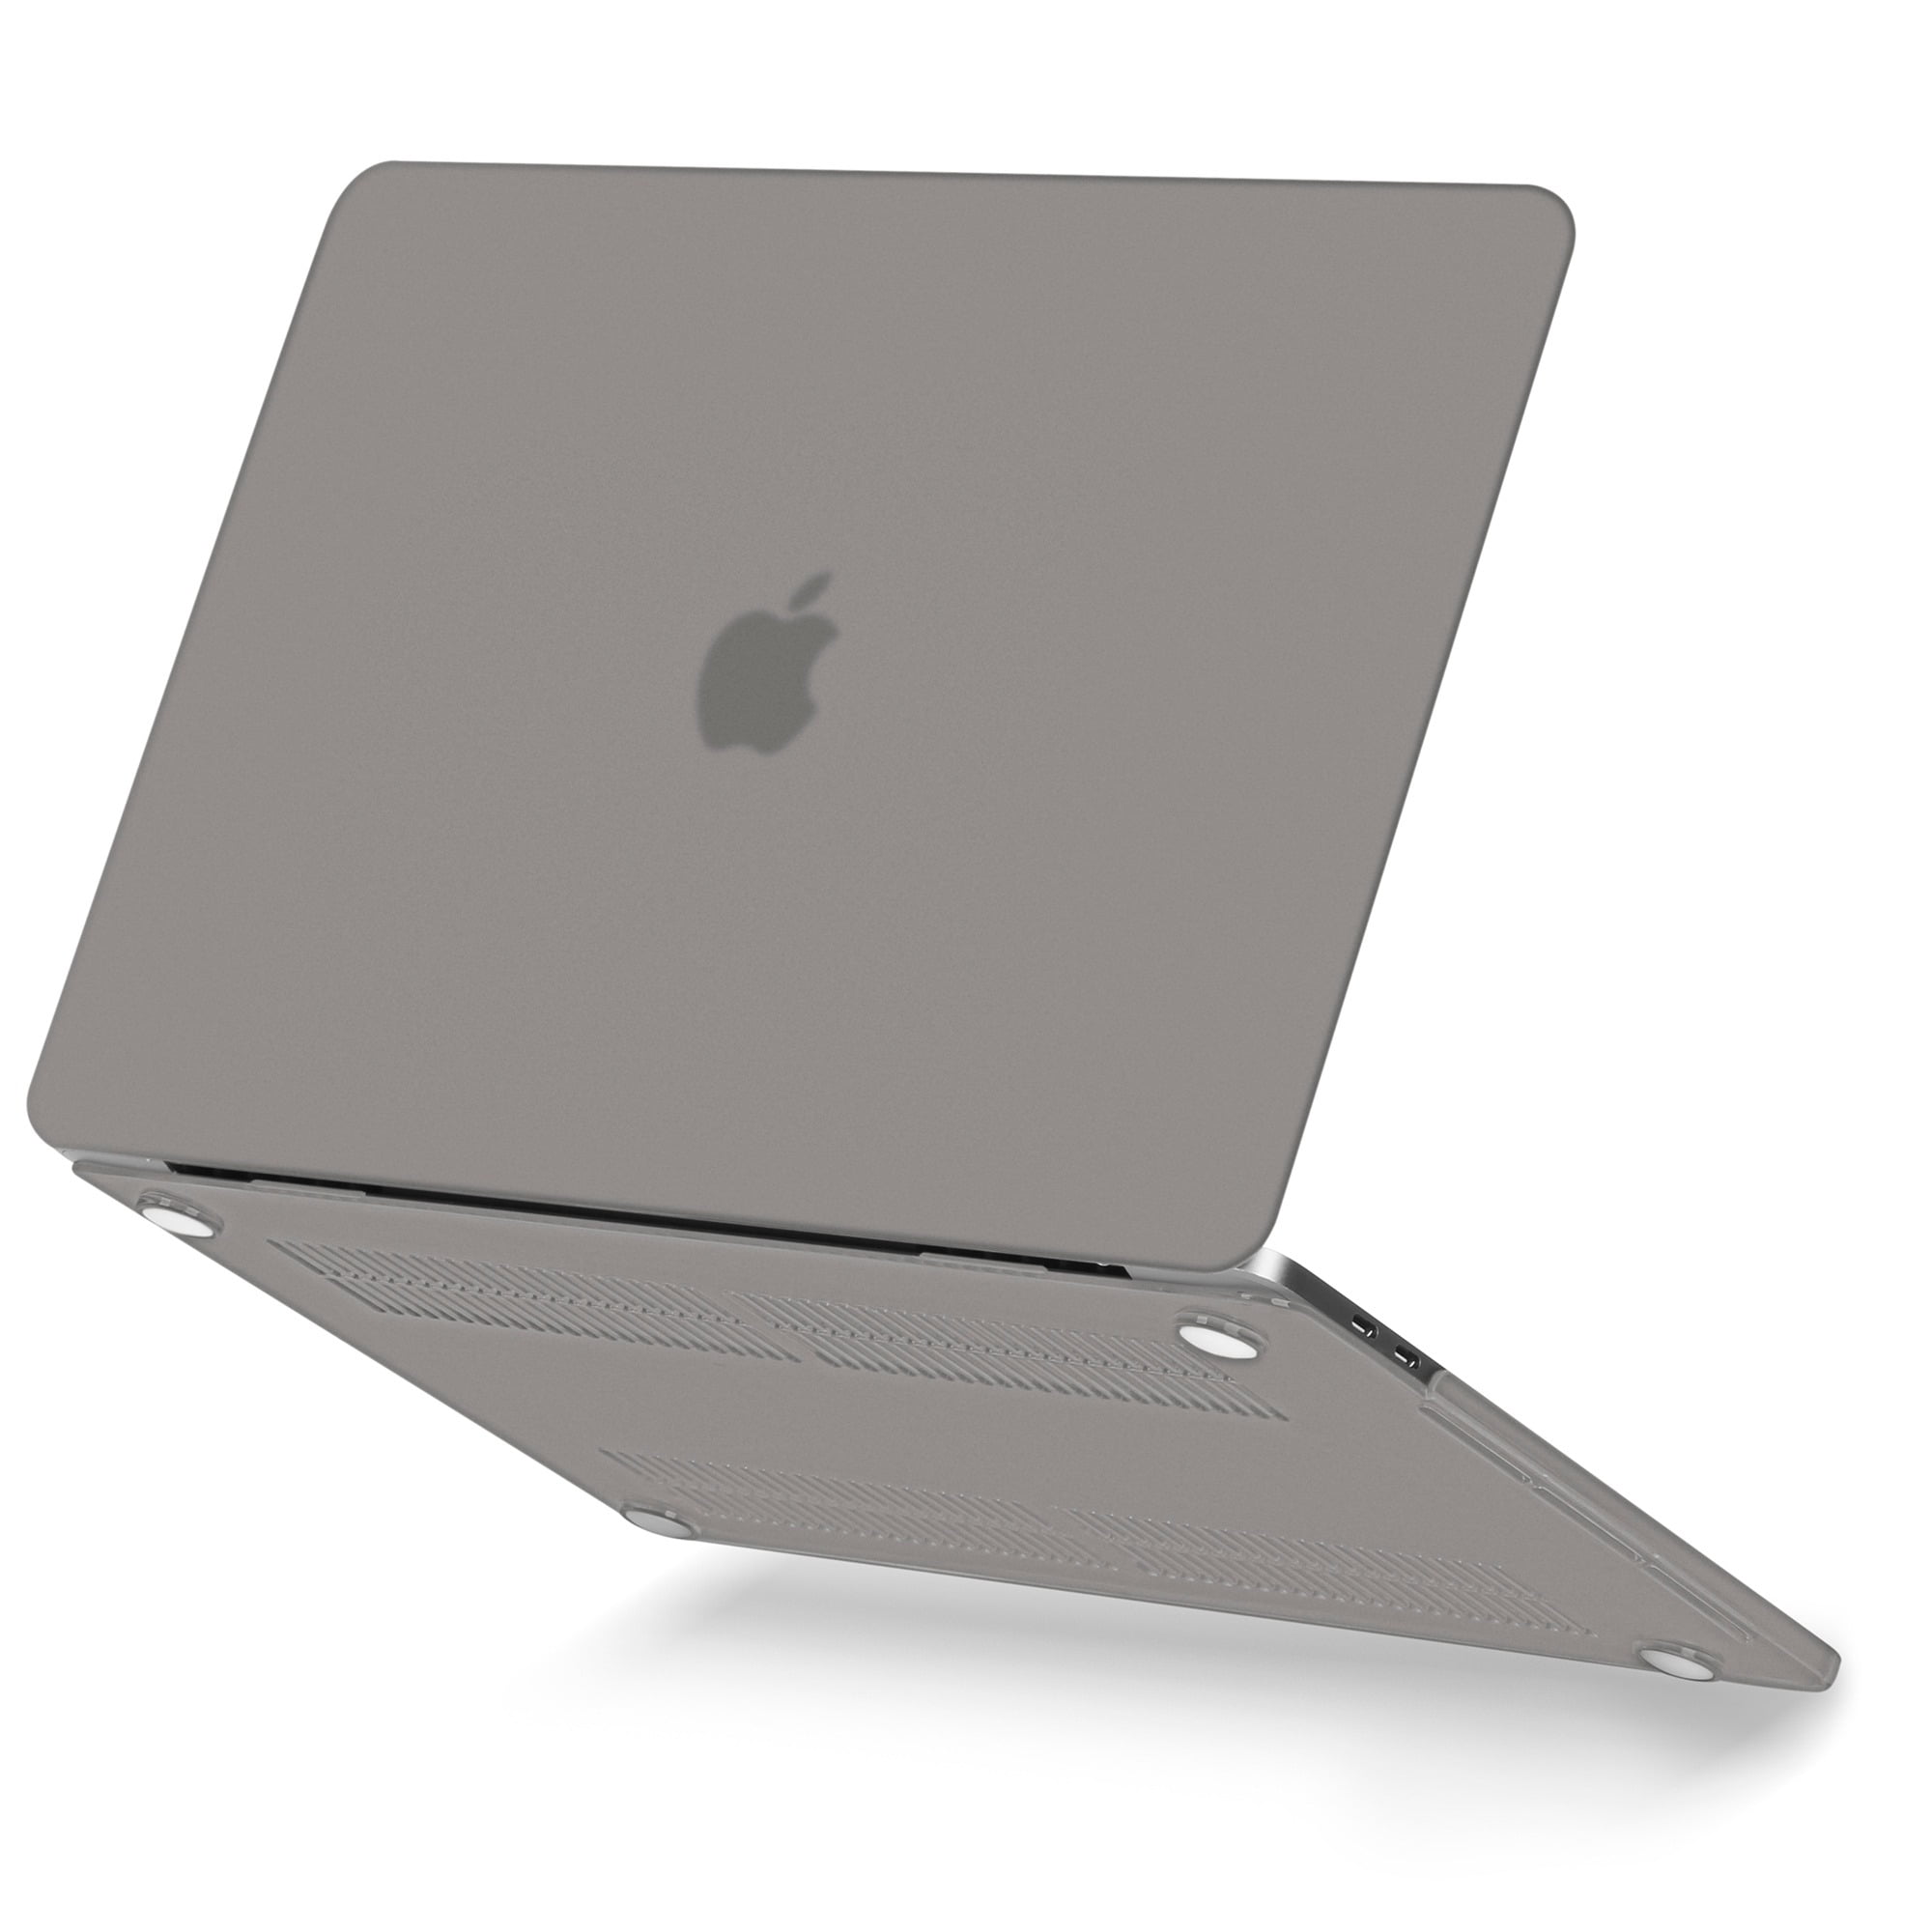 Landscape Oil Painting MacBook Case macbook pro 13 2020 macbook air 13 macbook pro 15 macbook Pro 16 inch hard case laptop case